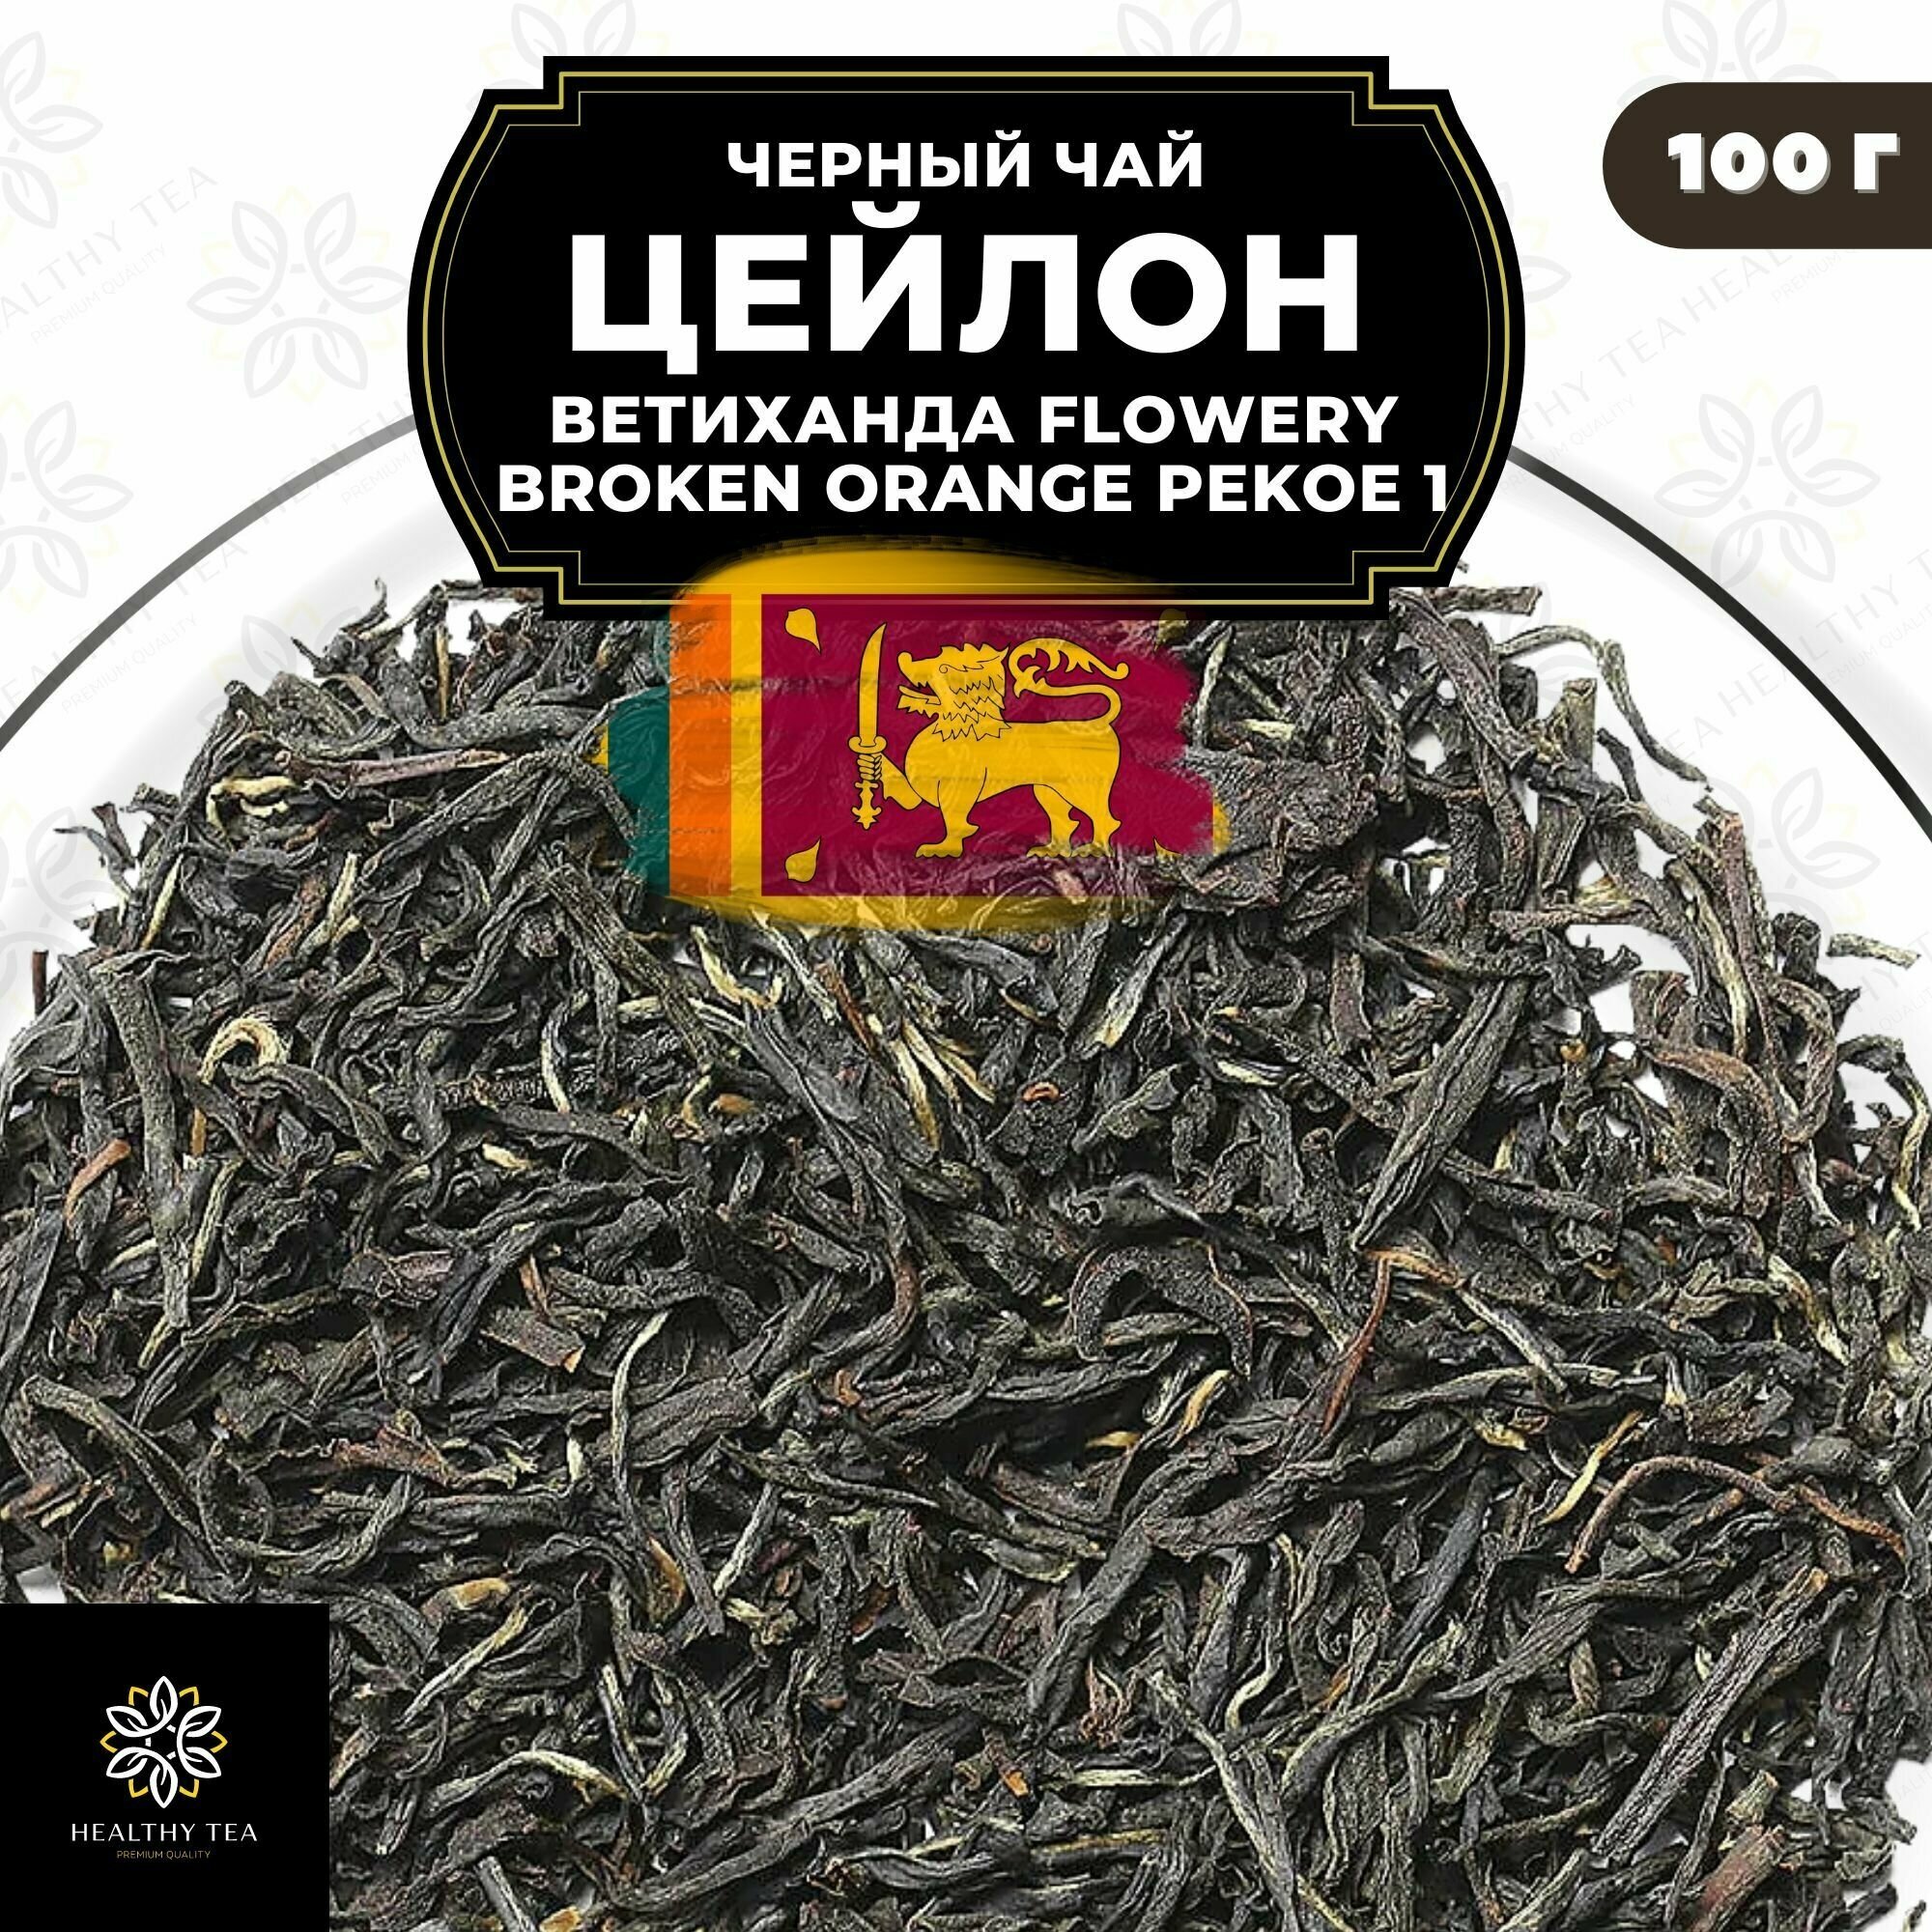 Цейлонский Черный крупнолистовой чай Цейлон Ветиханда Flowery Broken Orange Pekoe 1 (FBOP1) Полезный чай / HEALTHY TEA, 100 гр